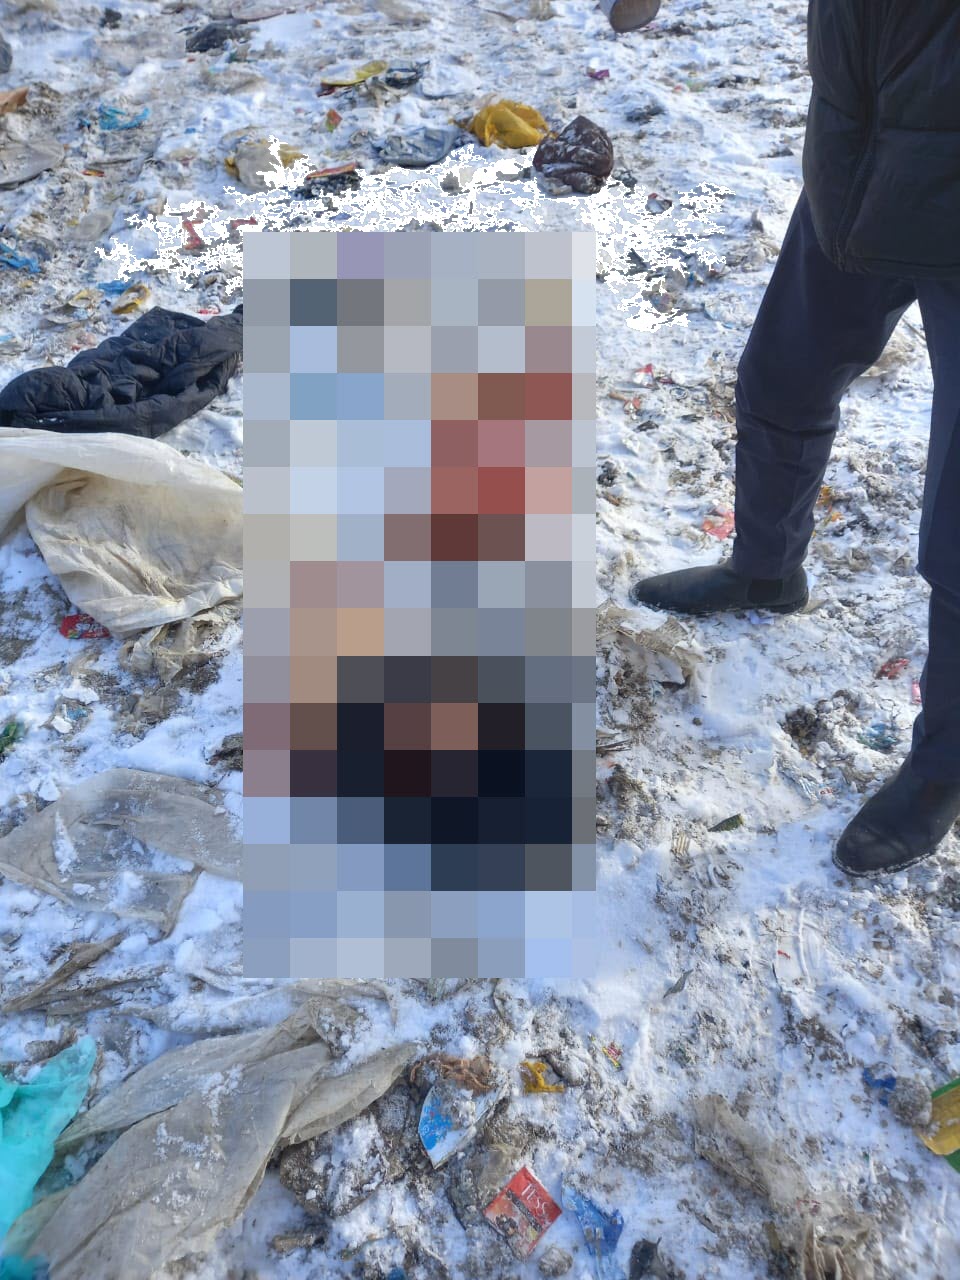 В Якутске фрагменты расчлененного тела были обнаружены рядом с помойкой, в грузовом автомобиле и в квартире